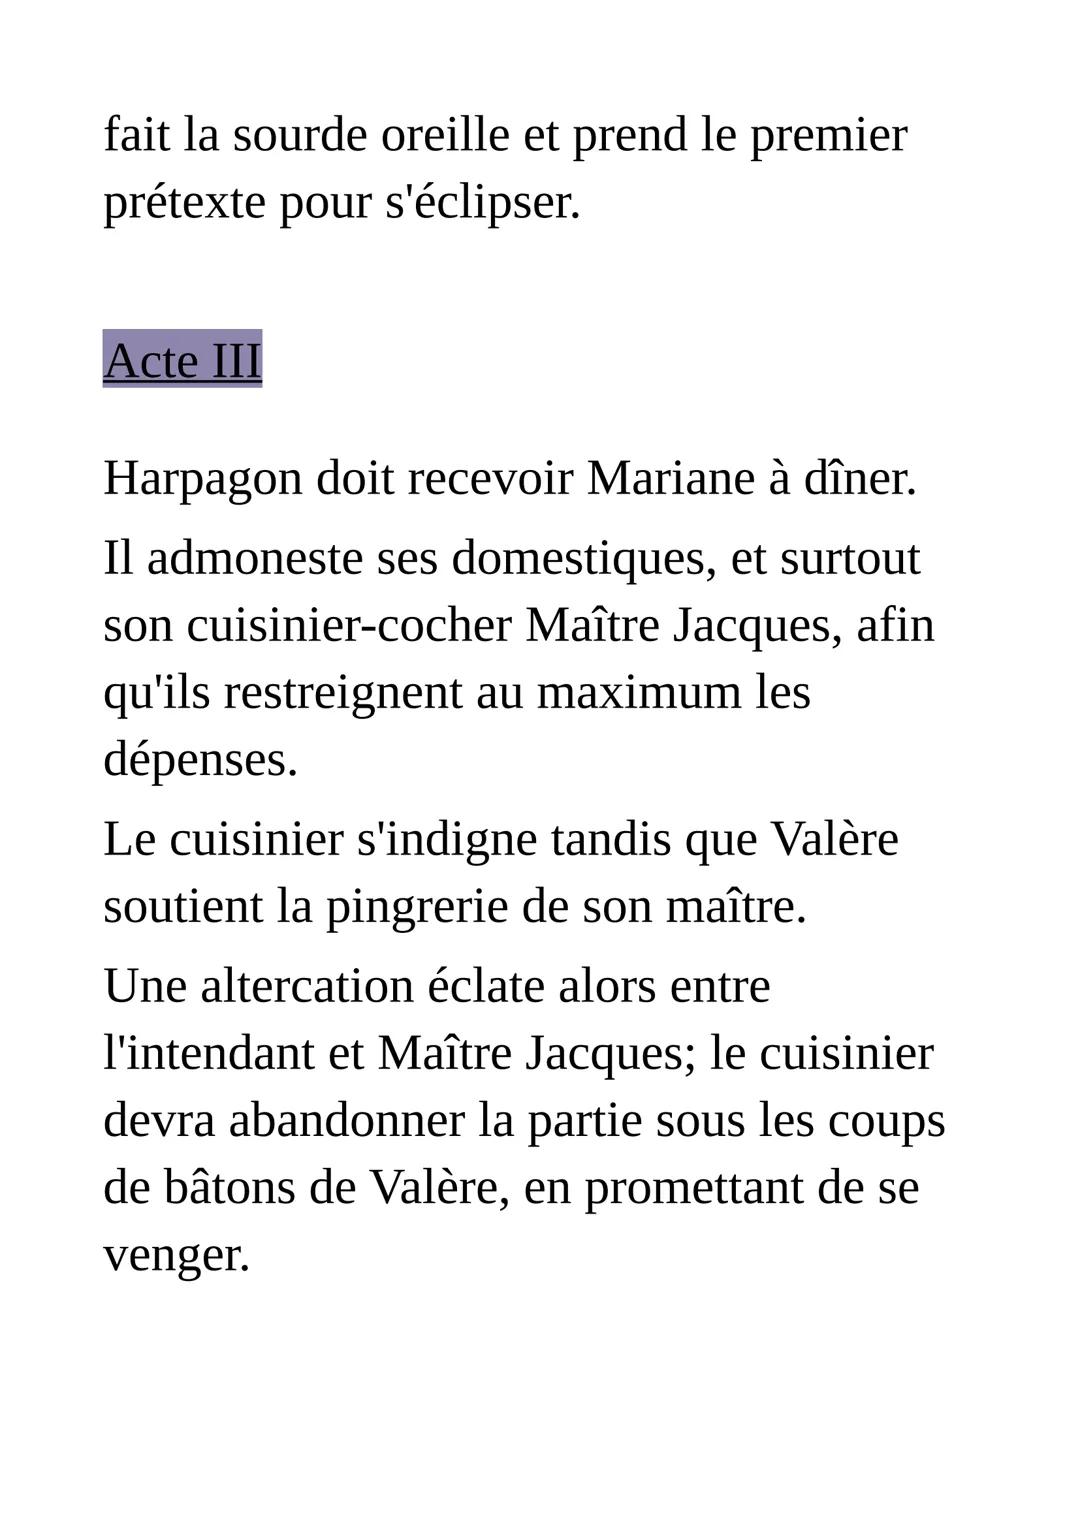 Résumé de l'Avare de Molière
Comédie en prose, en cinq actes
Acte premier
A Paris, dans la maison du riche veuf
Harpagon, ses deux enfants É